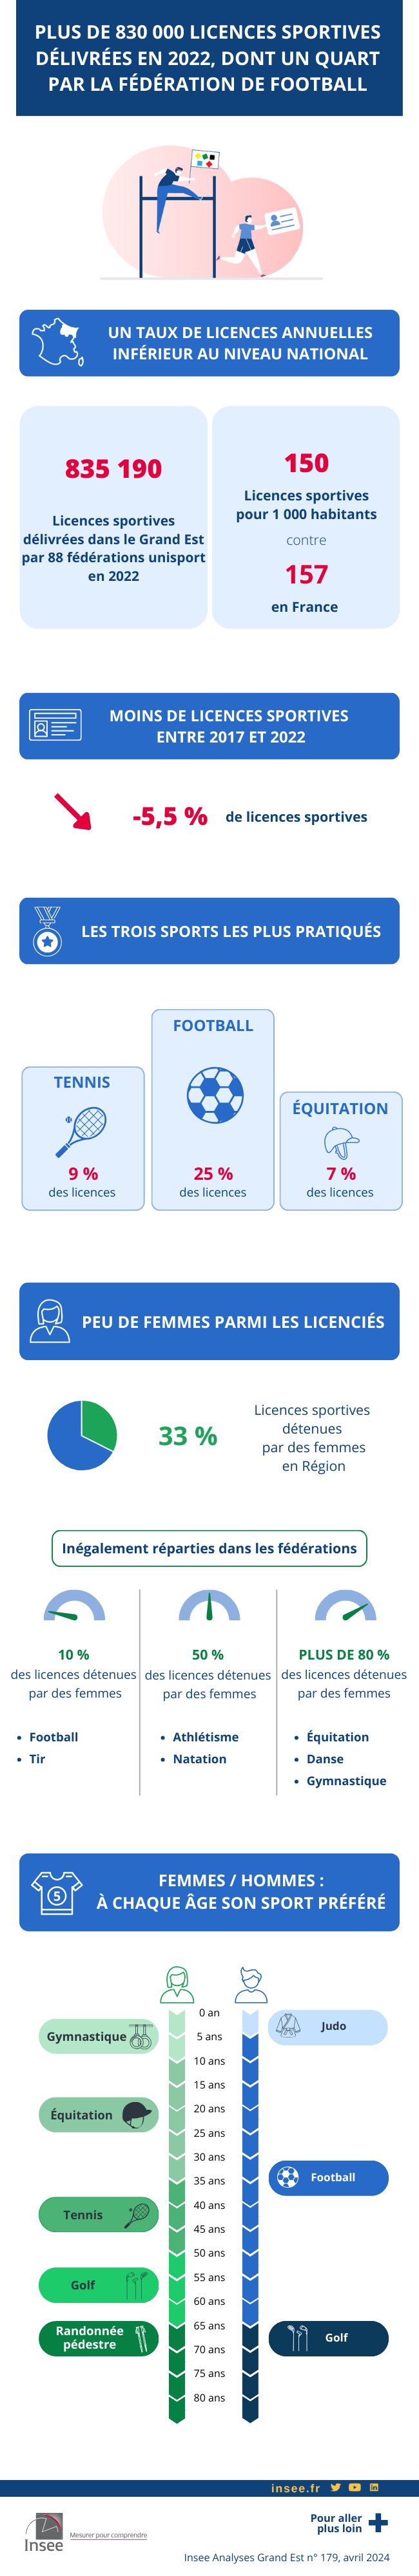 Insee - Plus de 830 000 licences sportives délivrées en 2022